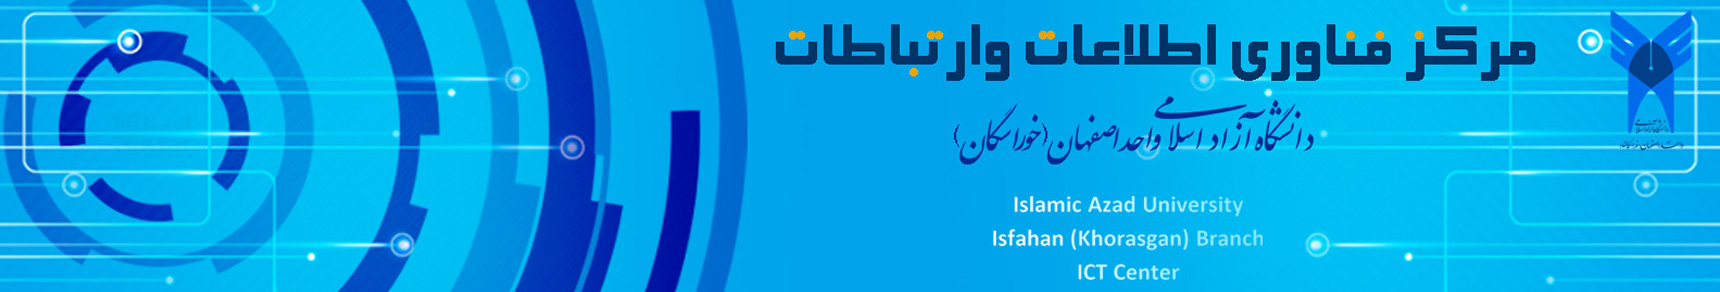 مرکز فناوری اطلاعات دانشگاه آزاد اسلامی واحد اصفهان(خوراسگان)